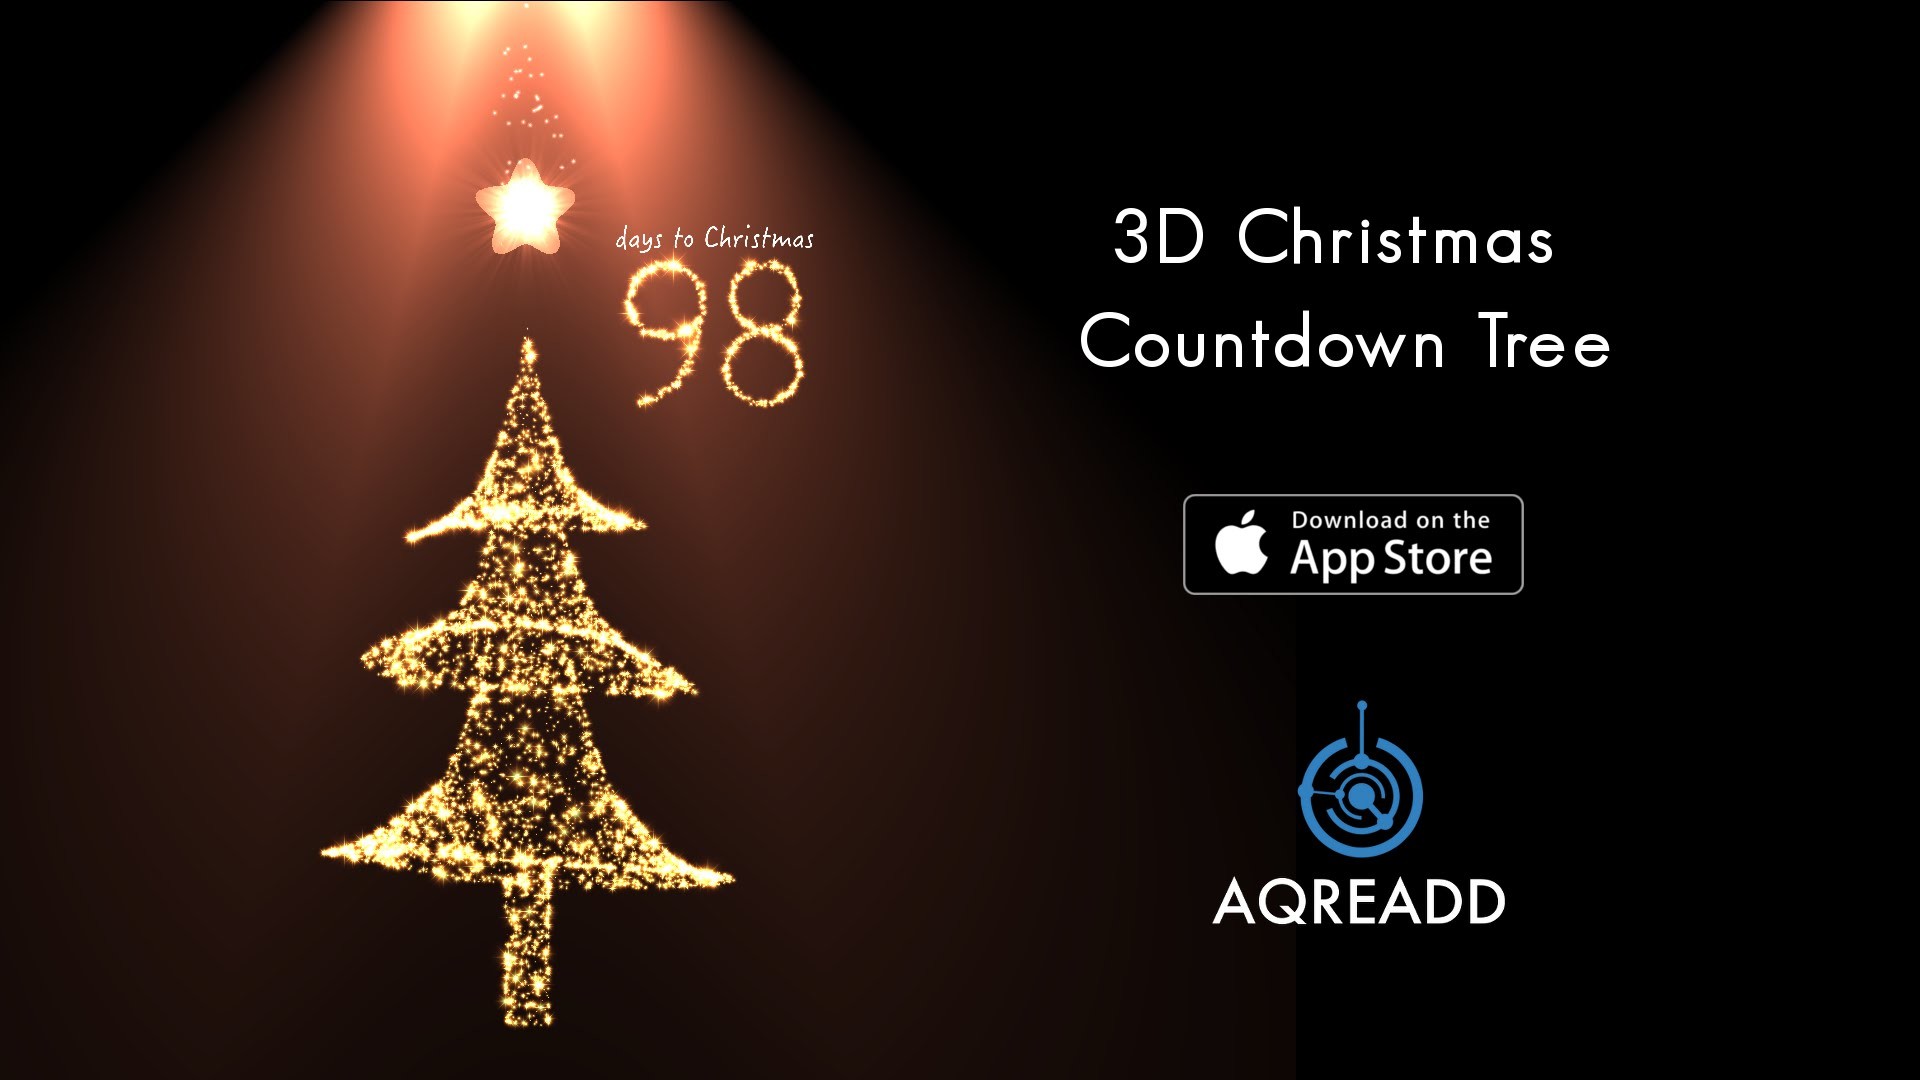 3D Christmas Countdown Tree trên iPhone mang đến cho người dùng một trải nghiệm đặc biệt trên thiết bị của mình. Với âm thanh và hiệu ứng hình ảnh 3D sống động, cây đếm ngược sẽ cho bạn biết bao nhiêu ngày nữa là đến Giáng Sinh. Hãy xem hình ảnh liên quan để hiểu rõ hơn về tính năng độc đáo này.